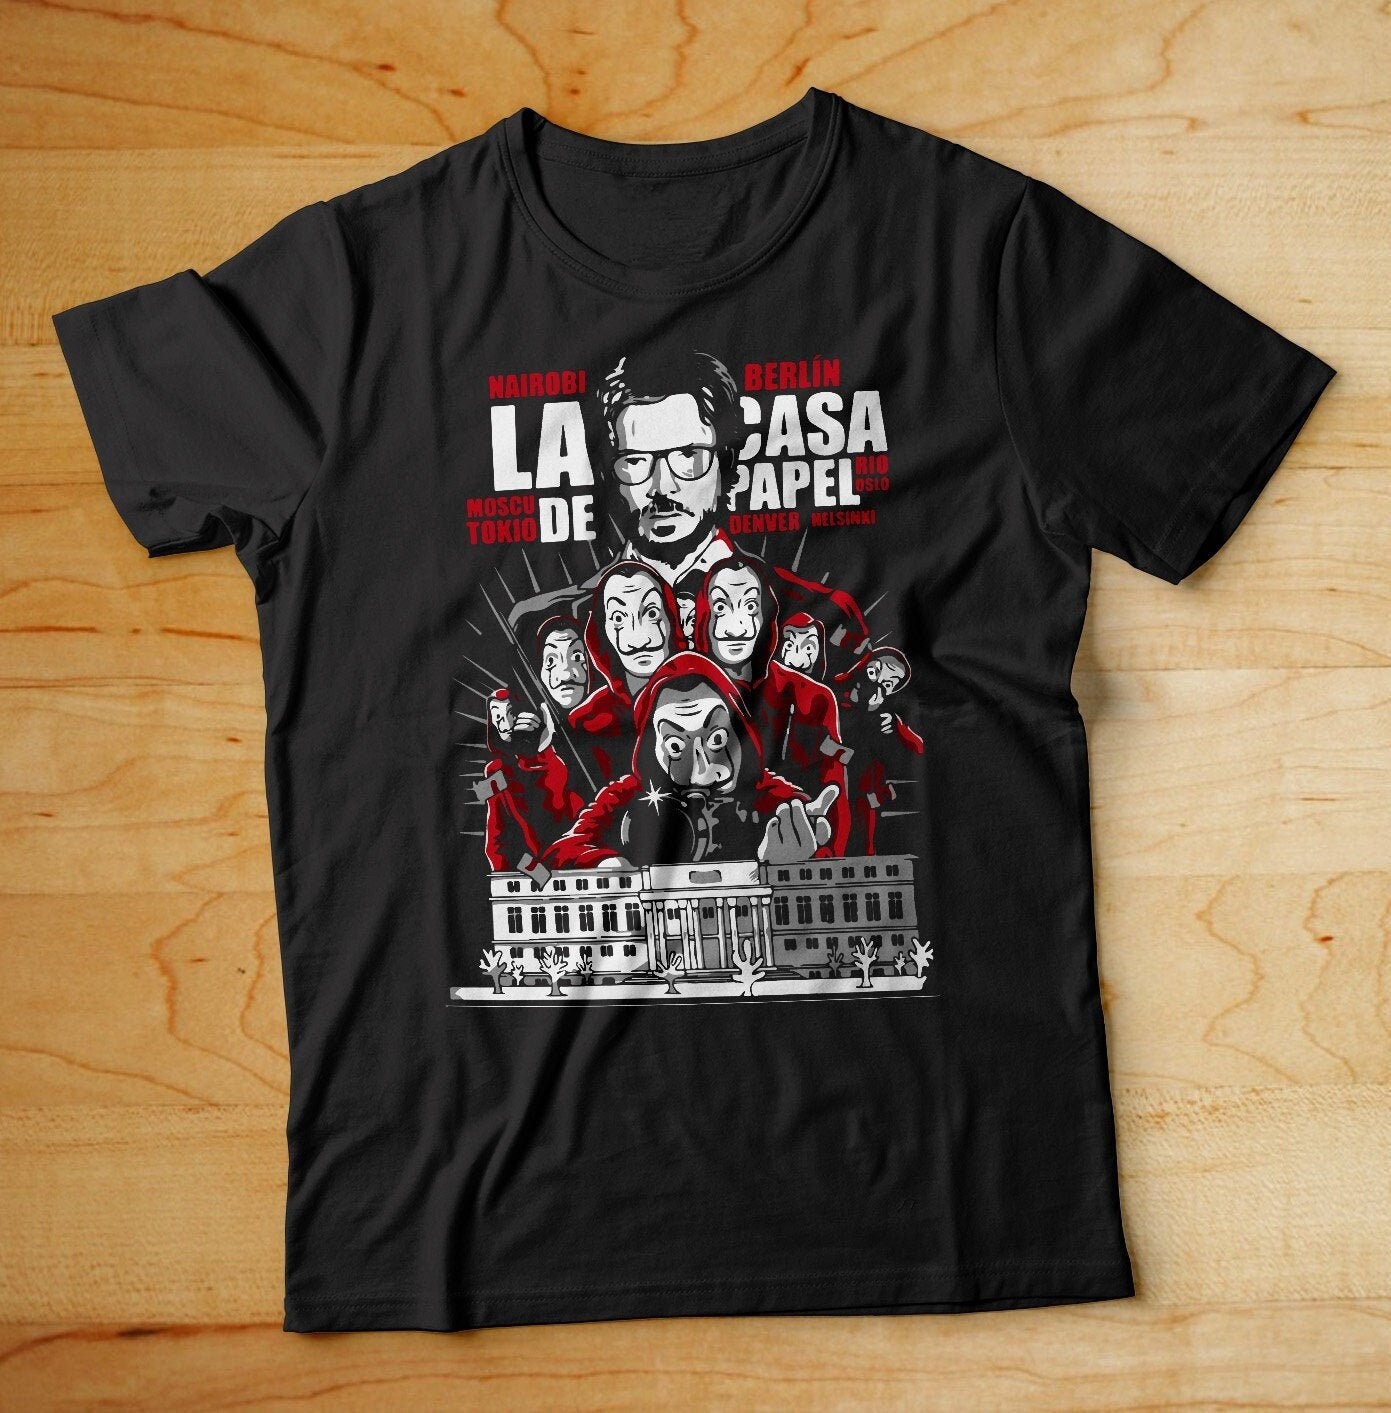 Money Heist shirt, La Casa de Papel Shirt